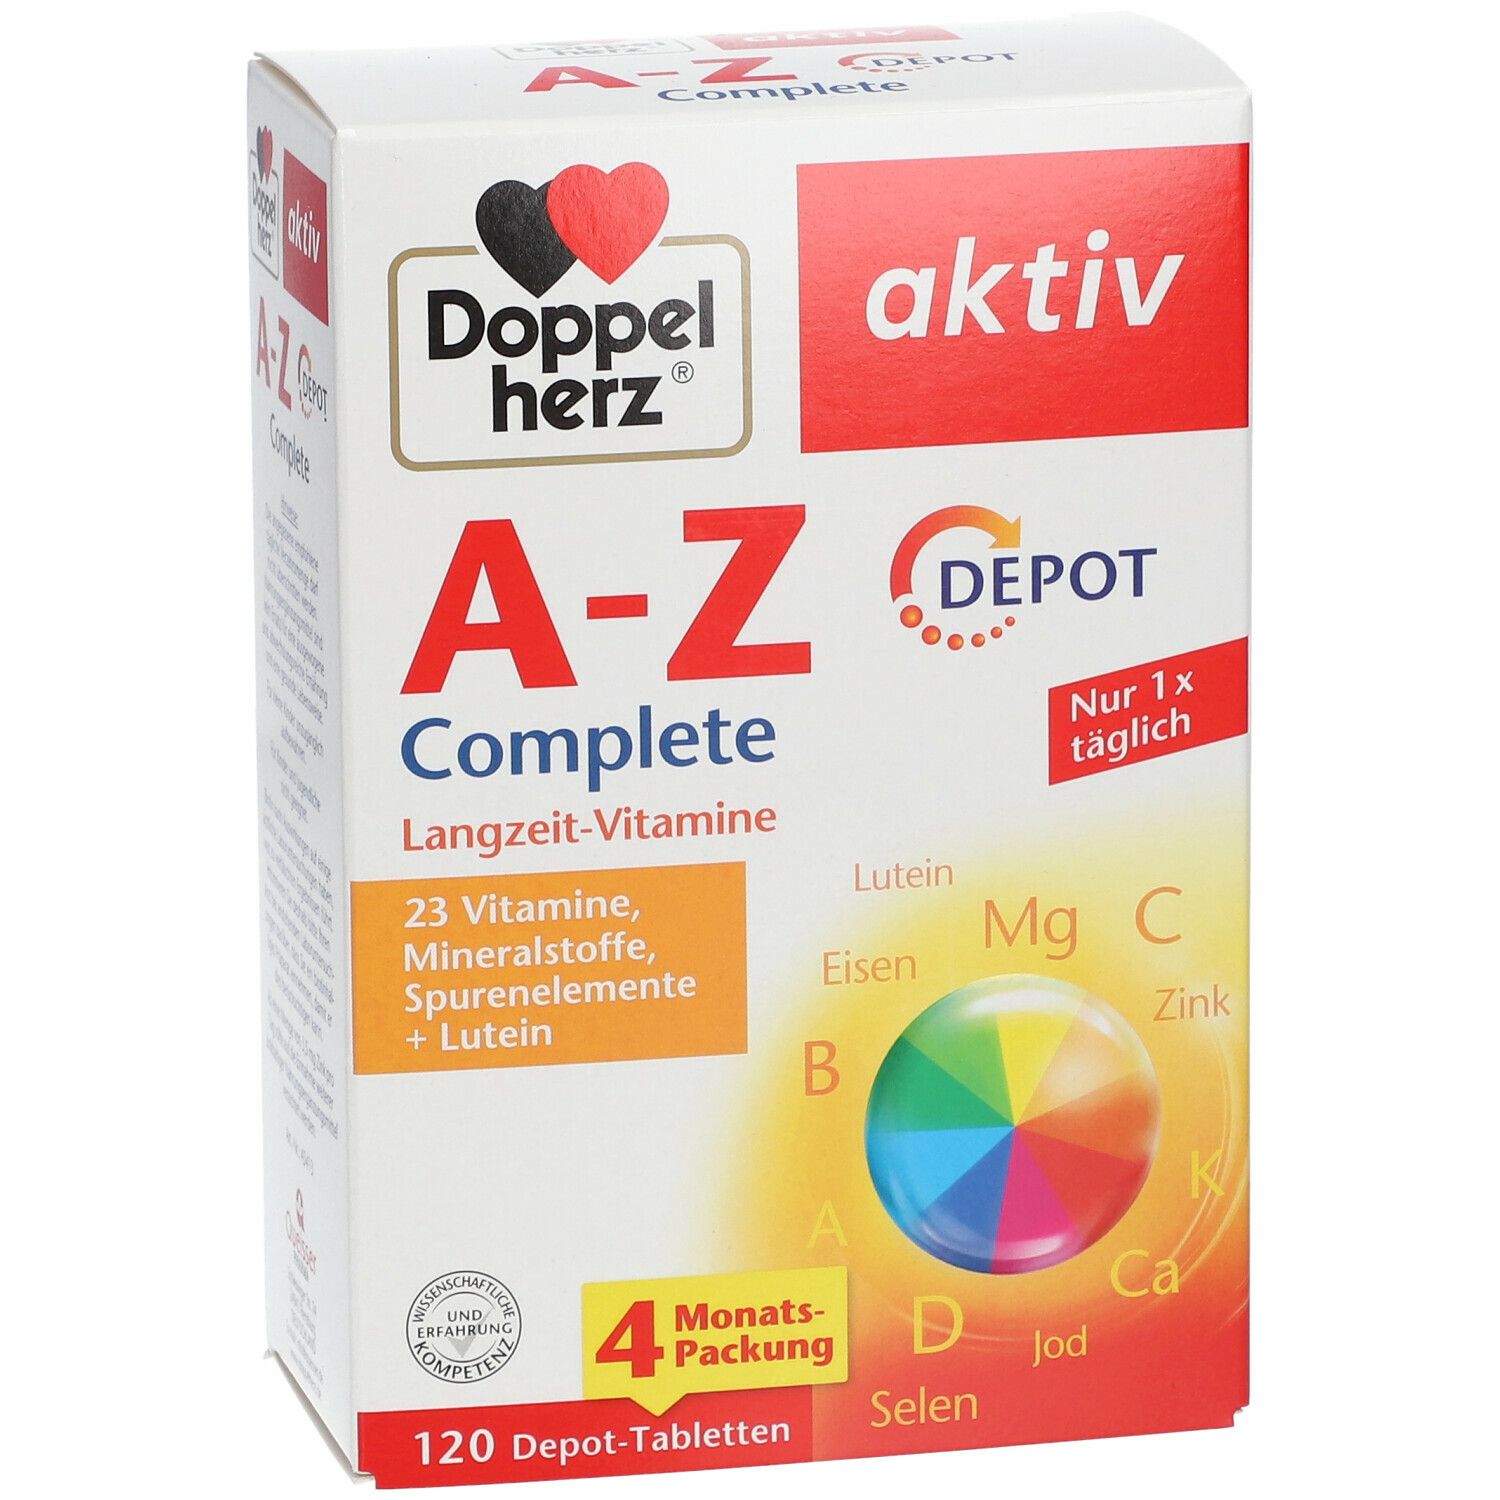 23 Vitamine Mineralstoffe Doppelherz A-Z Complete DEPOT Langzeit-Vitamine 